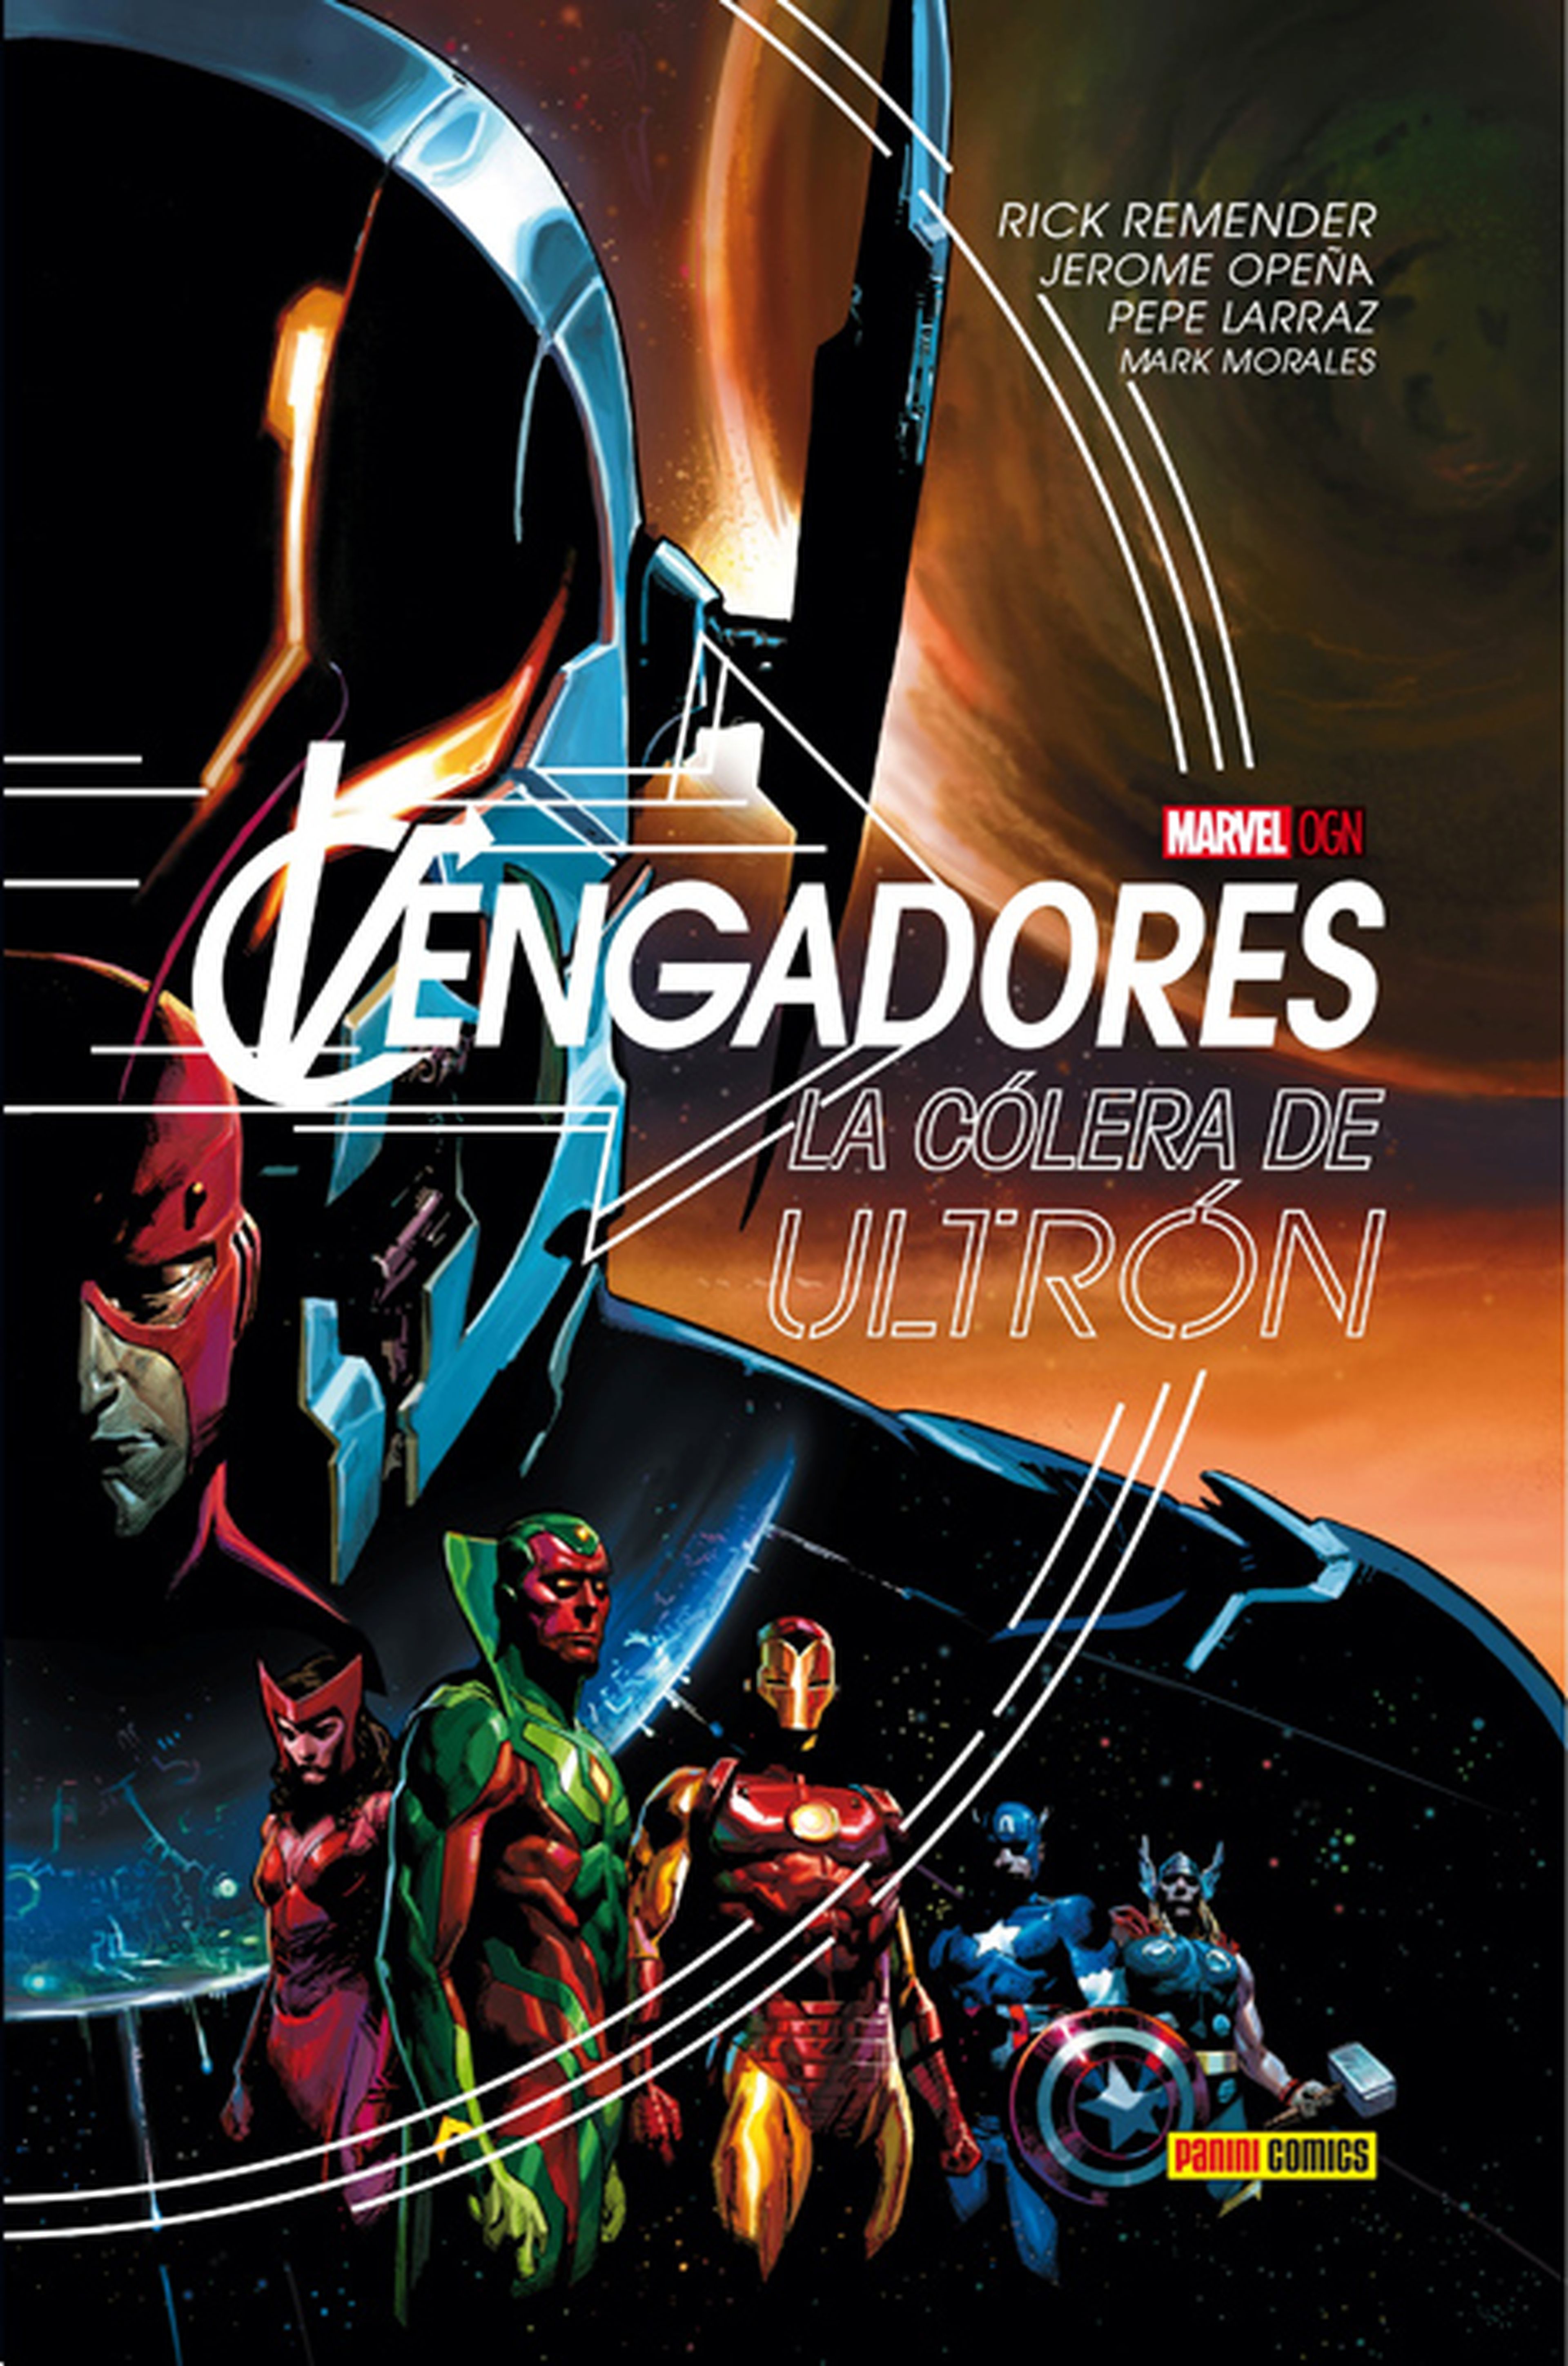 Los Vengadores: La cólera de Ultrón. Reseña de la última novela gráfica de Marvel